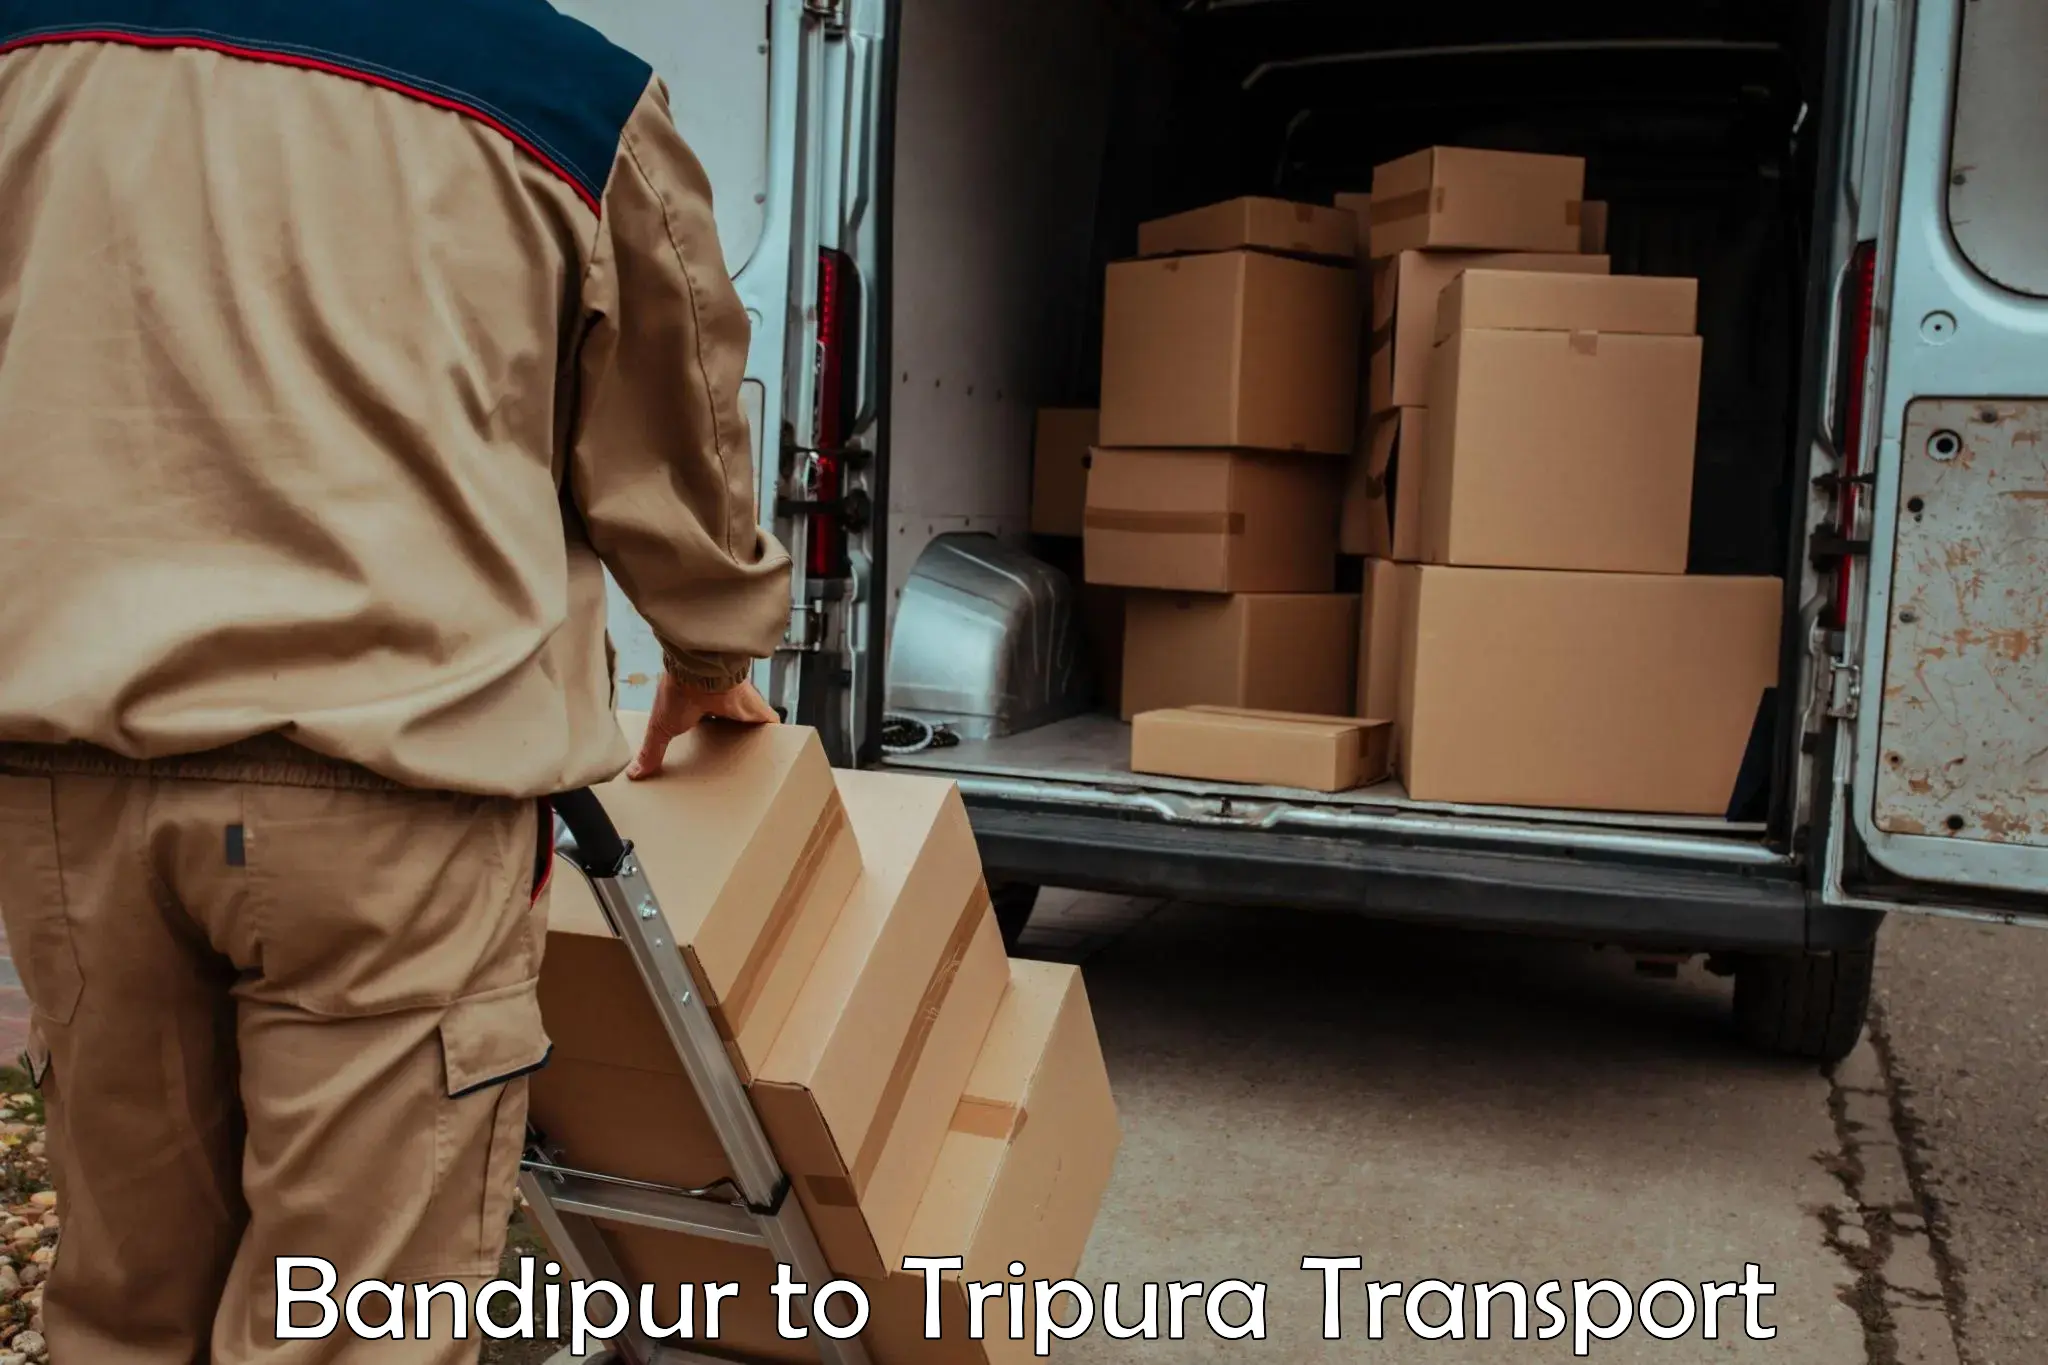 Furniture transport service Bandipur to Tripura